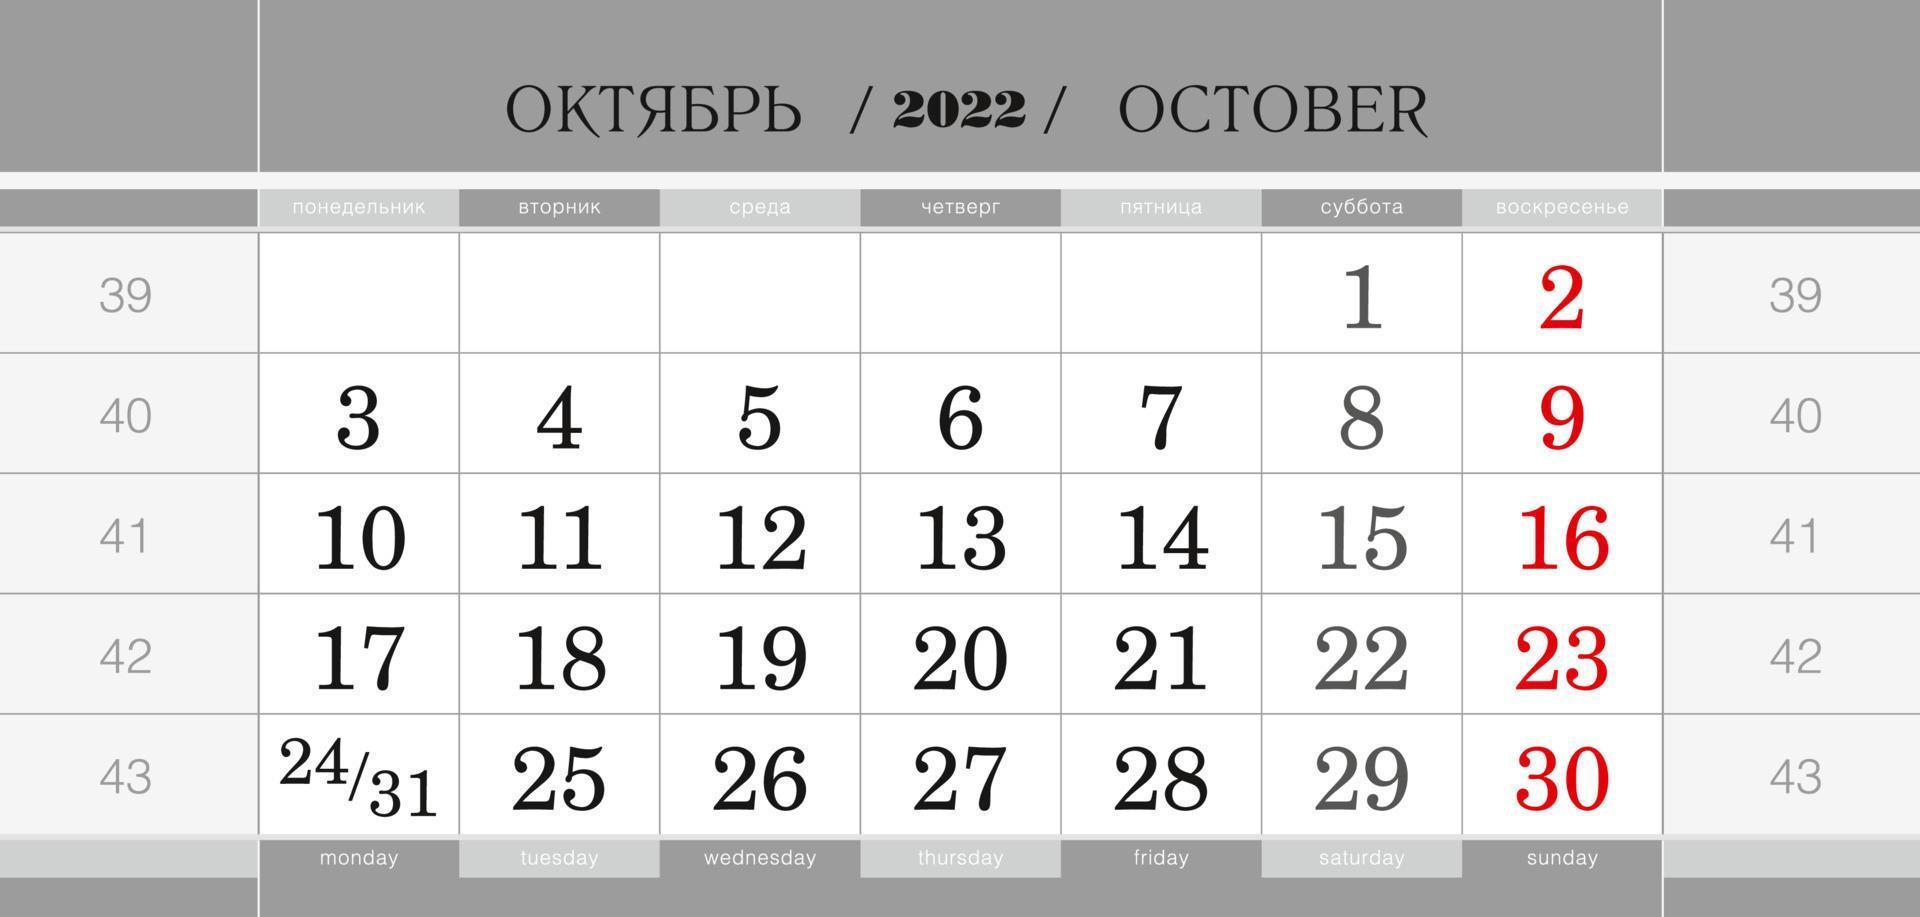 bloque trimestral del calendario para el año 2022, octubre de 2022. calendario de pared, inglés y ruso. la semana comienza a partir del lunes. vector